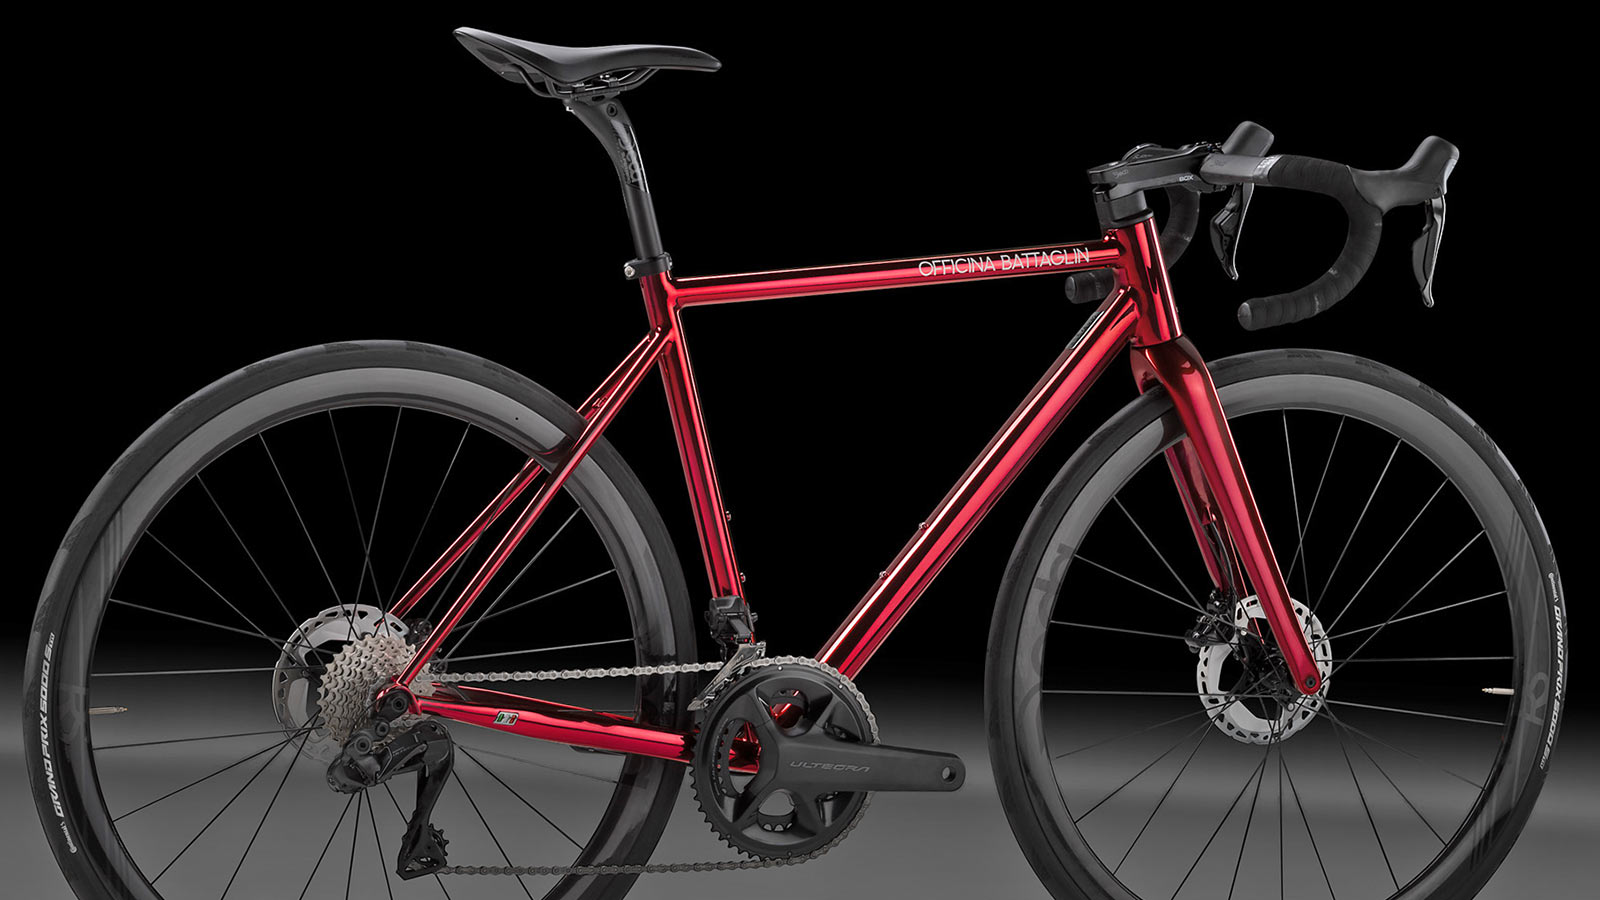 Officina Battaglin Grand Tour custom Italian steel endurance road bike in shiny chromovelato red, detail